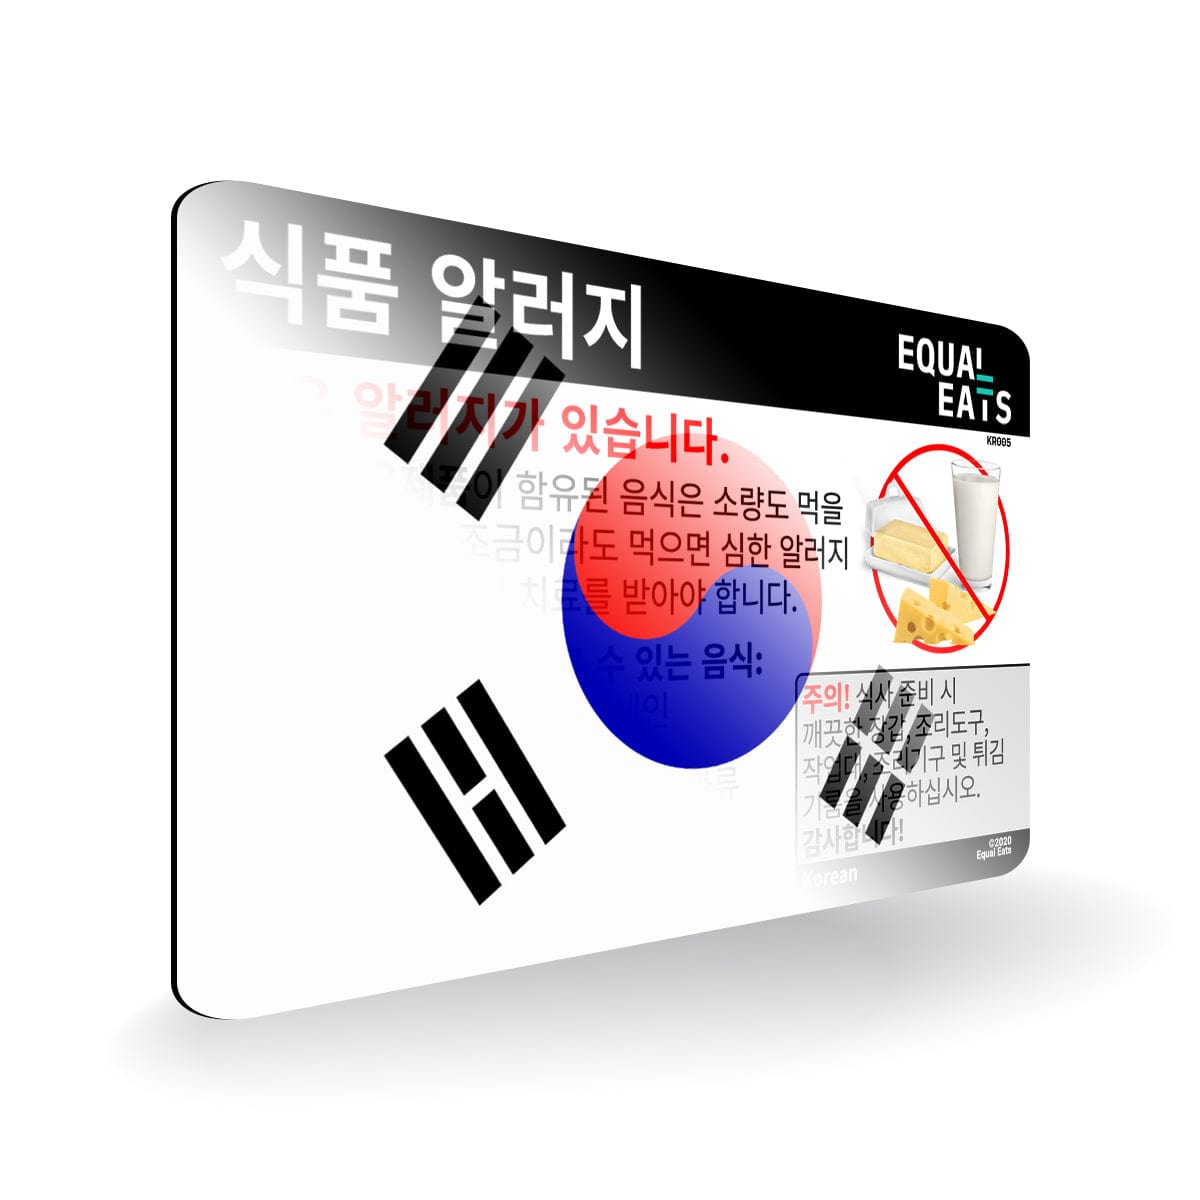 Milk Allergy in Korean. Milk Allergy Card for Korea